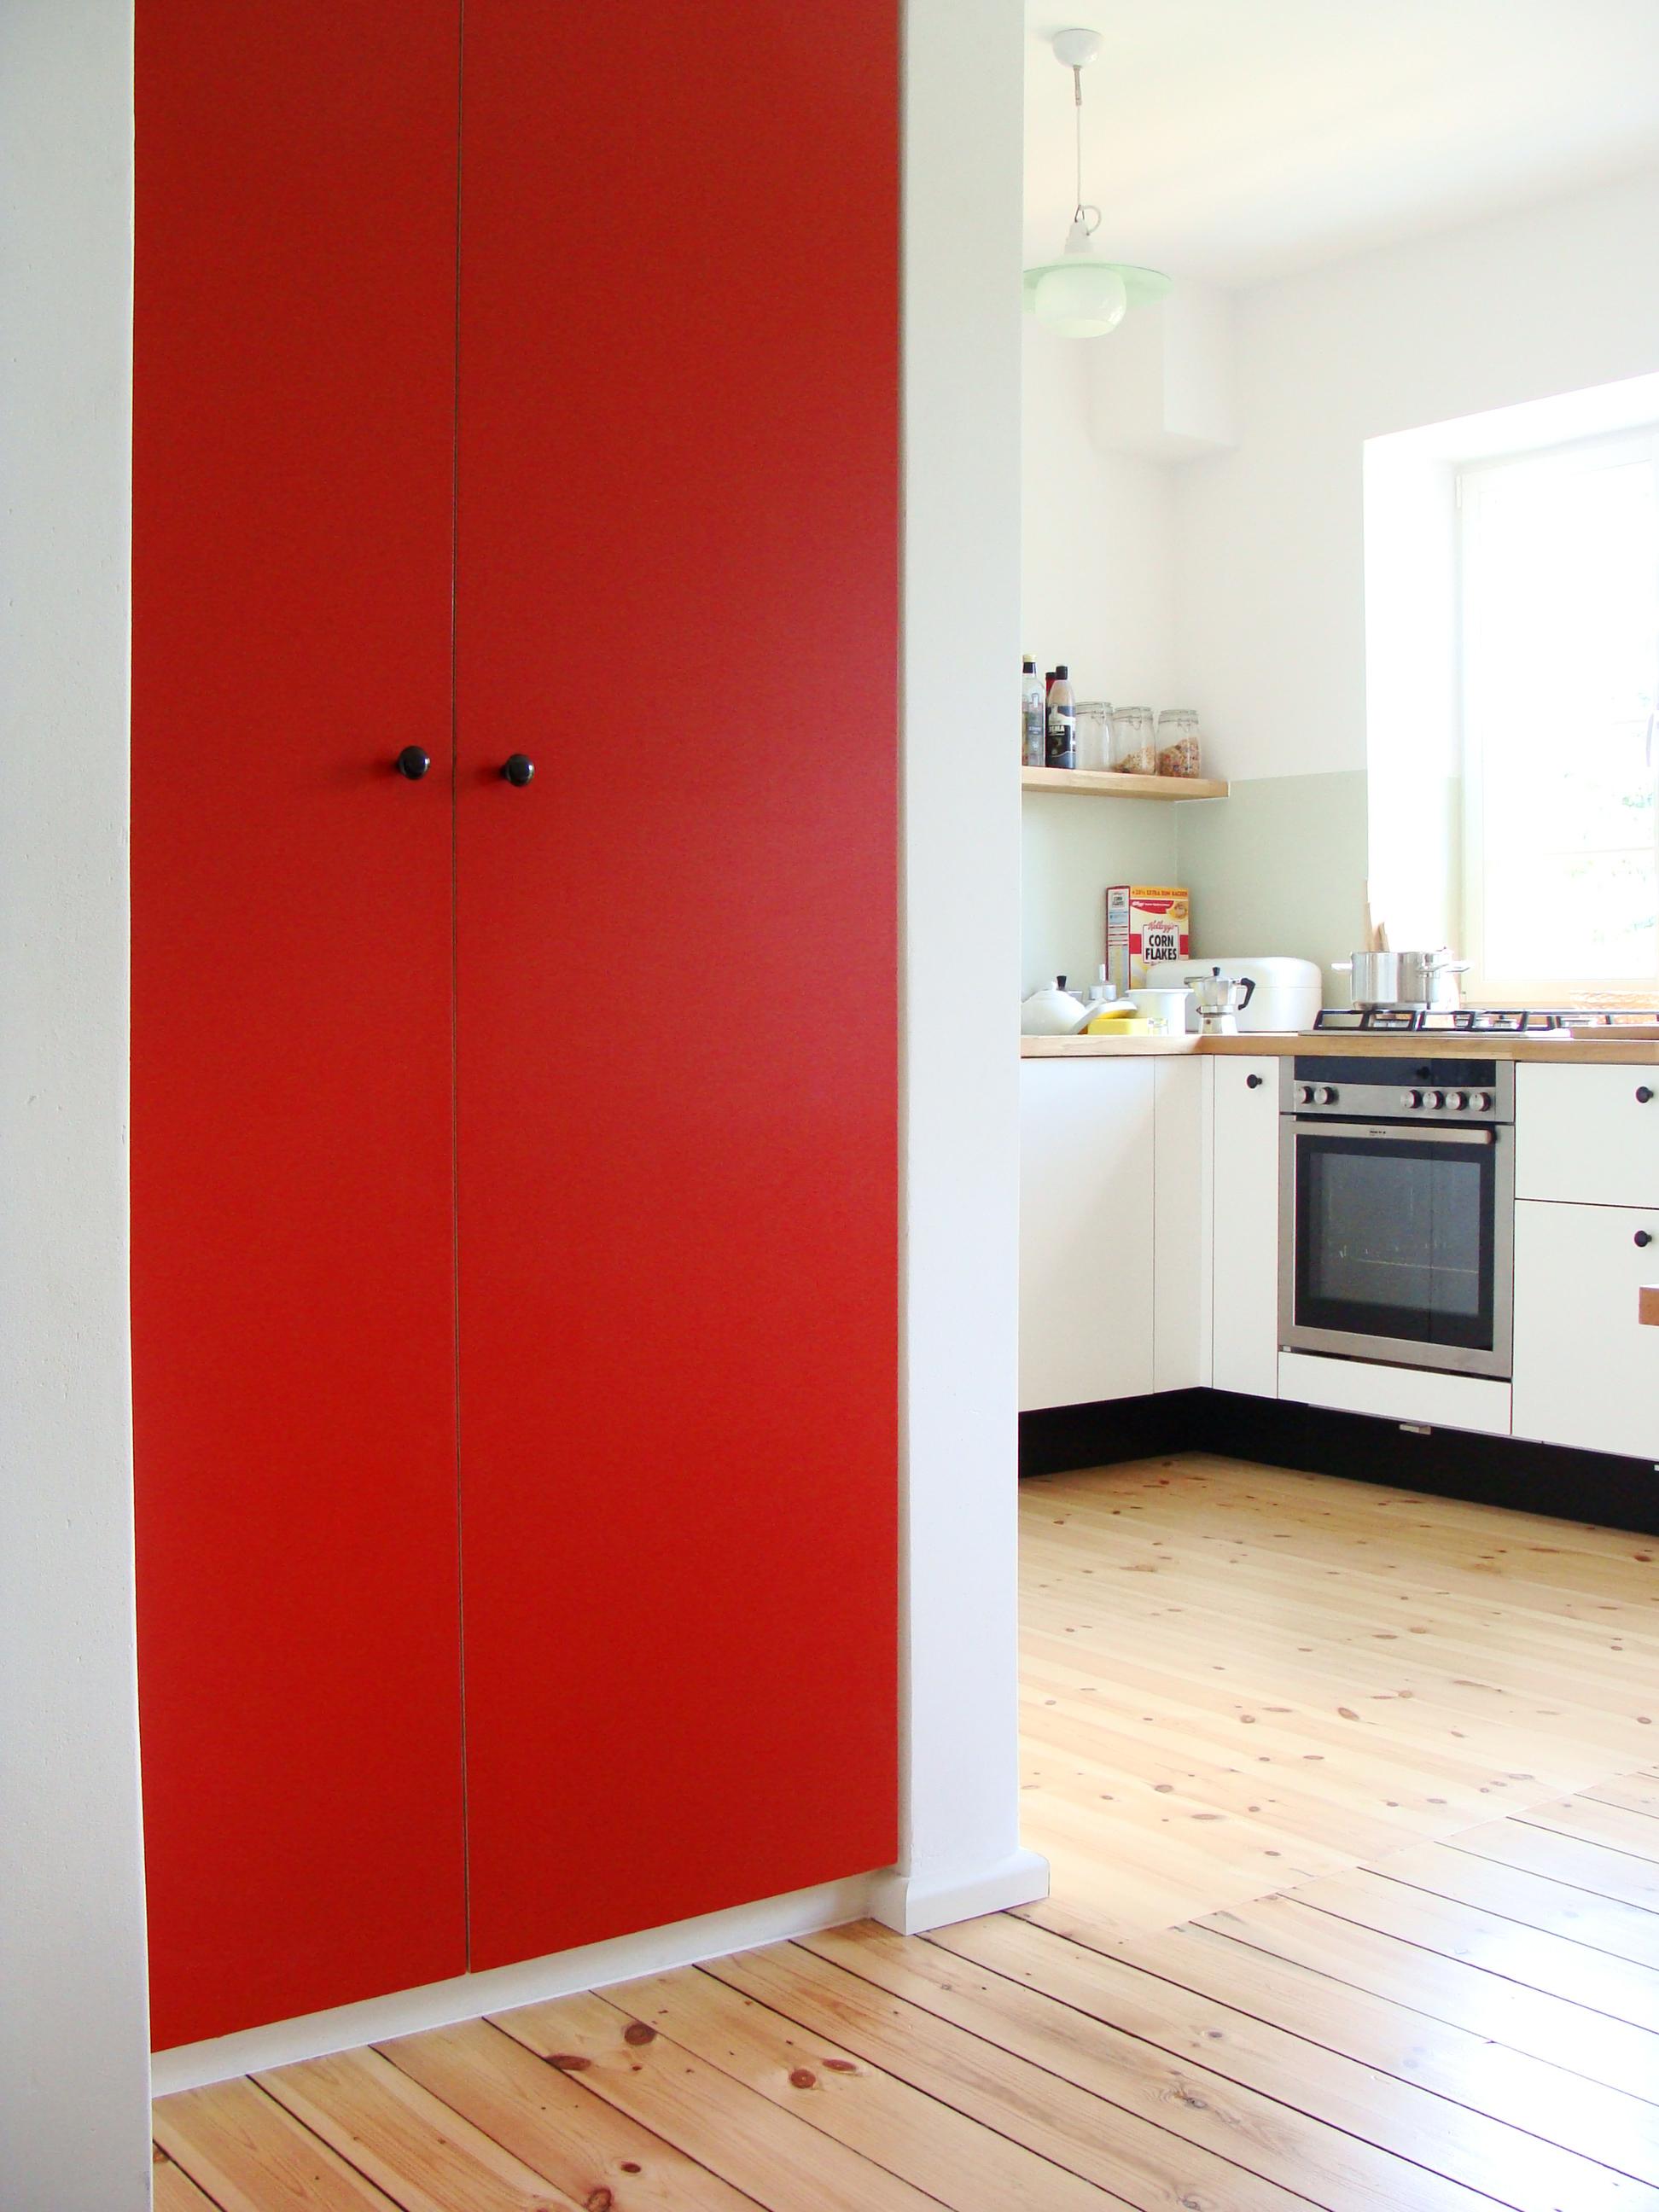 Einbauschrank mit roter Tür #küche #dielenboden #einbauschrank #essplatz ©Mareike Kühn